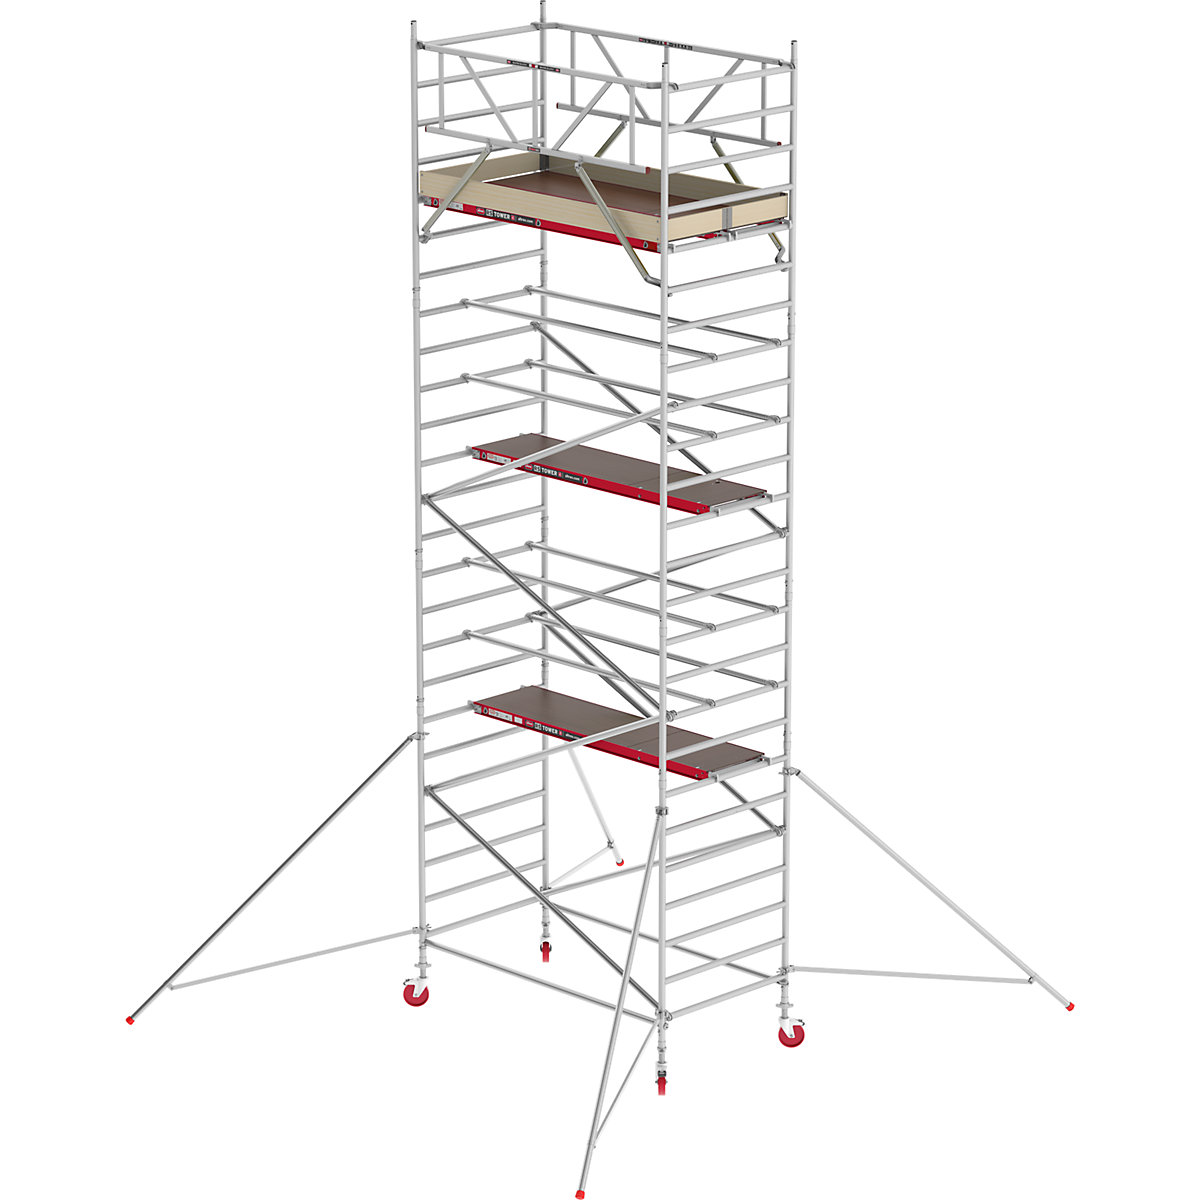 Altrex Fahrgerüst RS TOWER 42 breit, Holzplattform, Länge 1,85 m, Arbeitshöhe 8,20 m